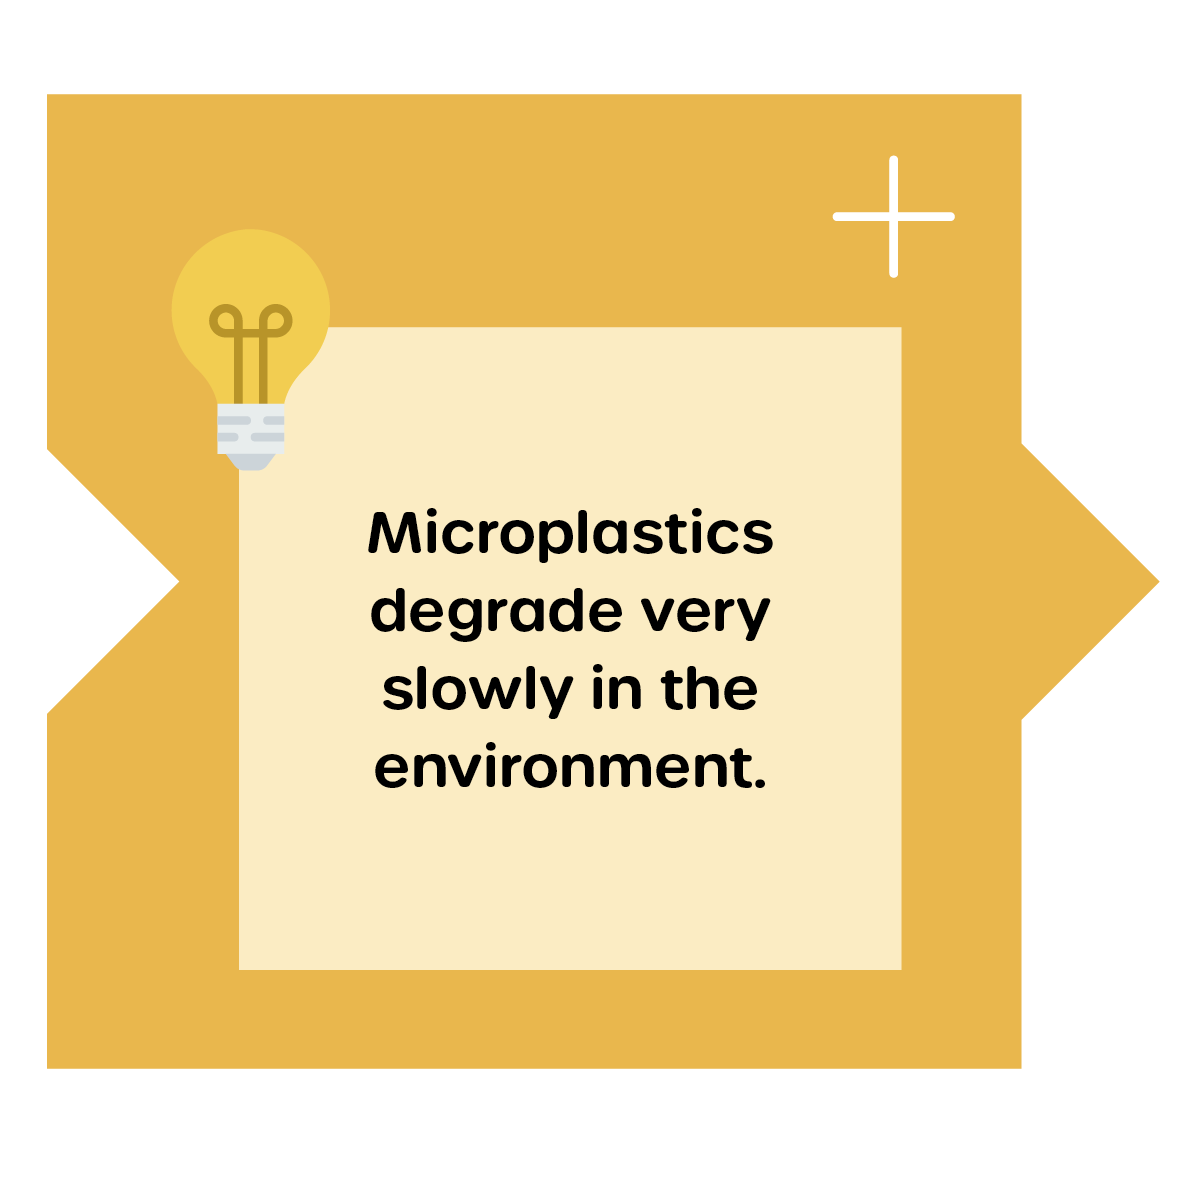 Degradation of microplatiscs